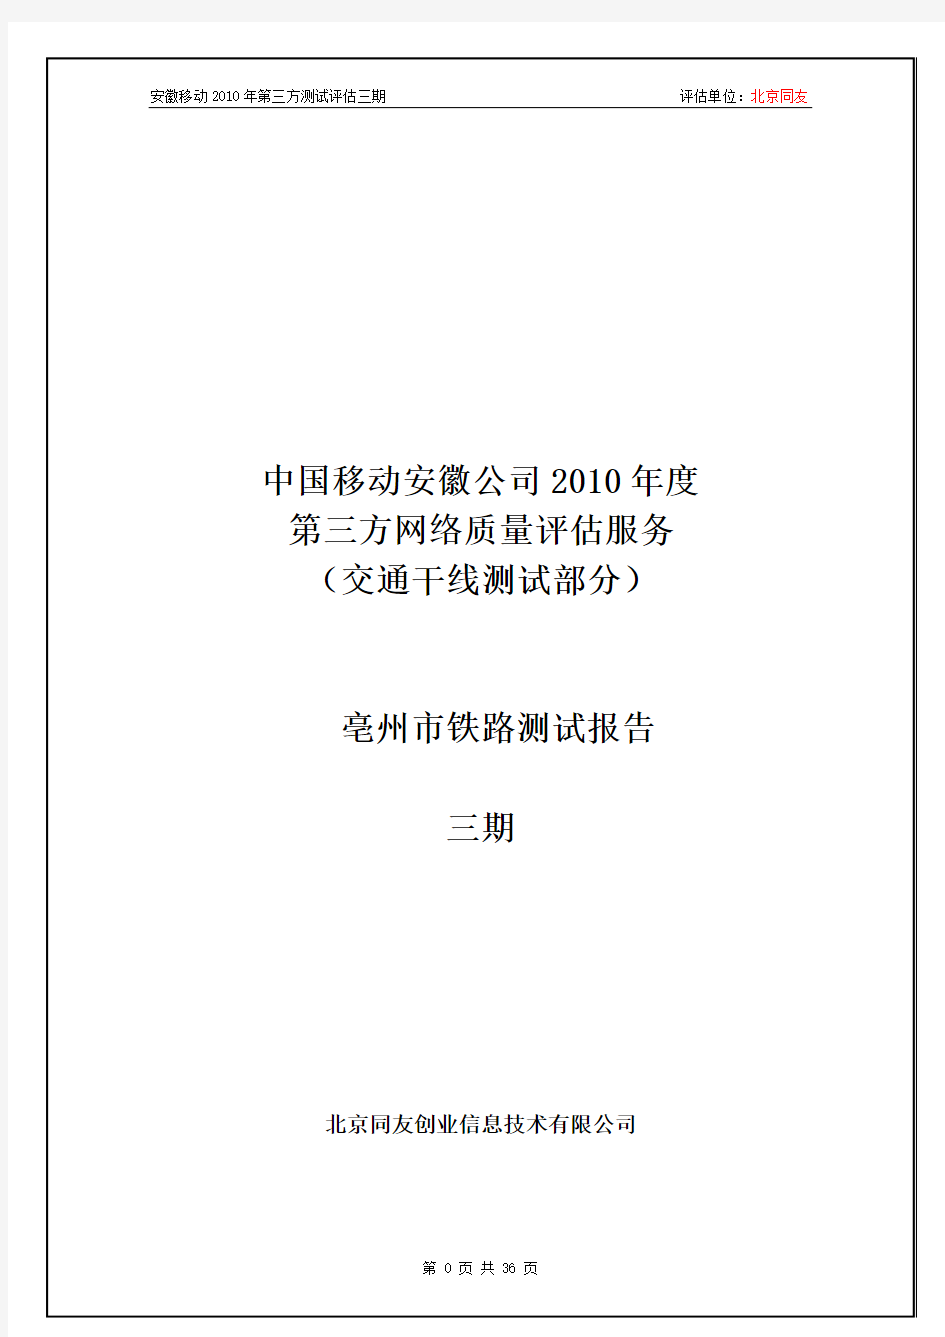 中国移动安徽公司2010年度第三方测试评估报告(亳州市铁路)